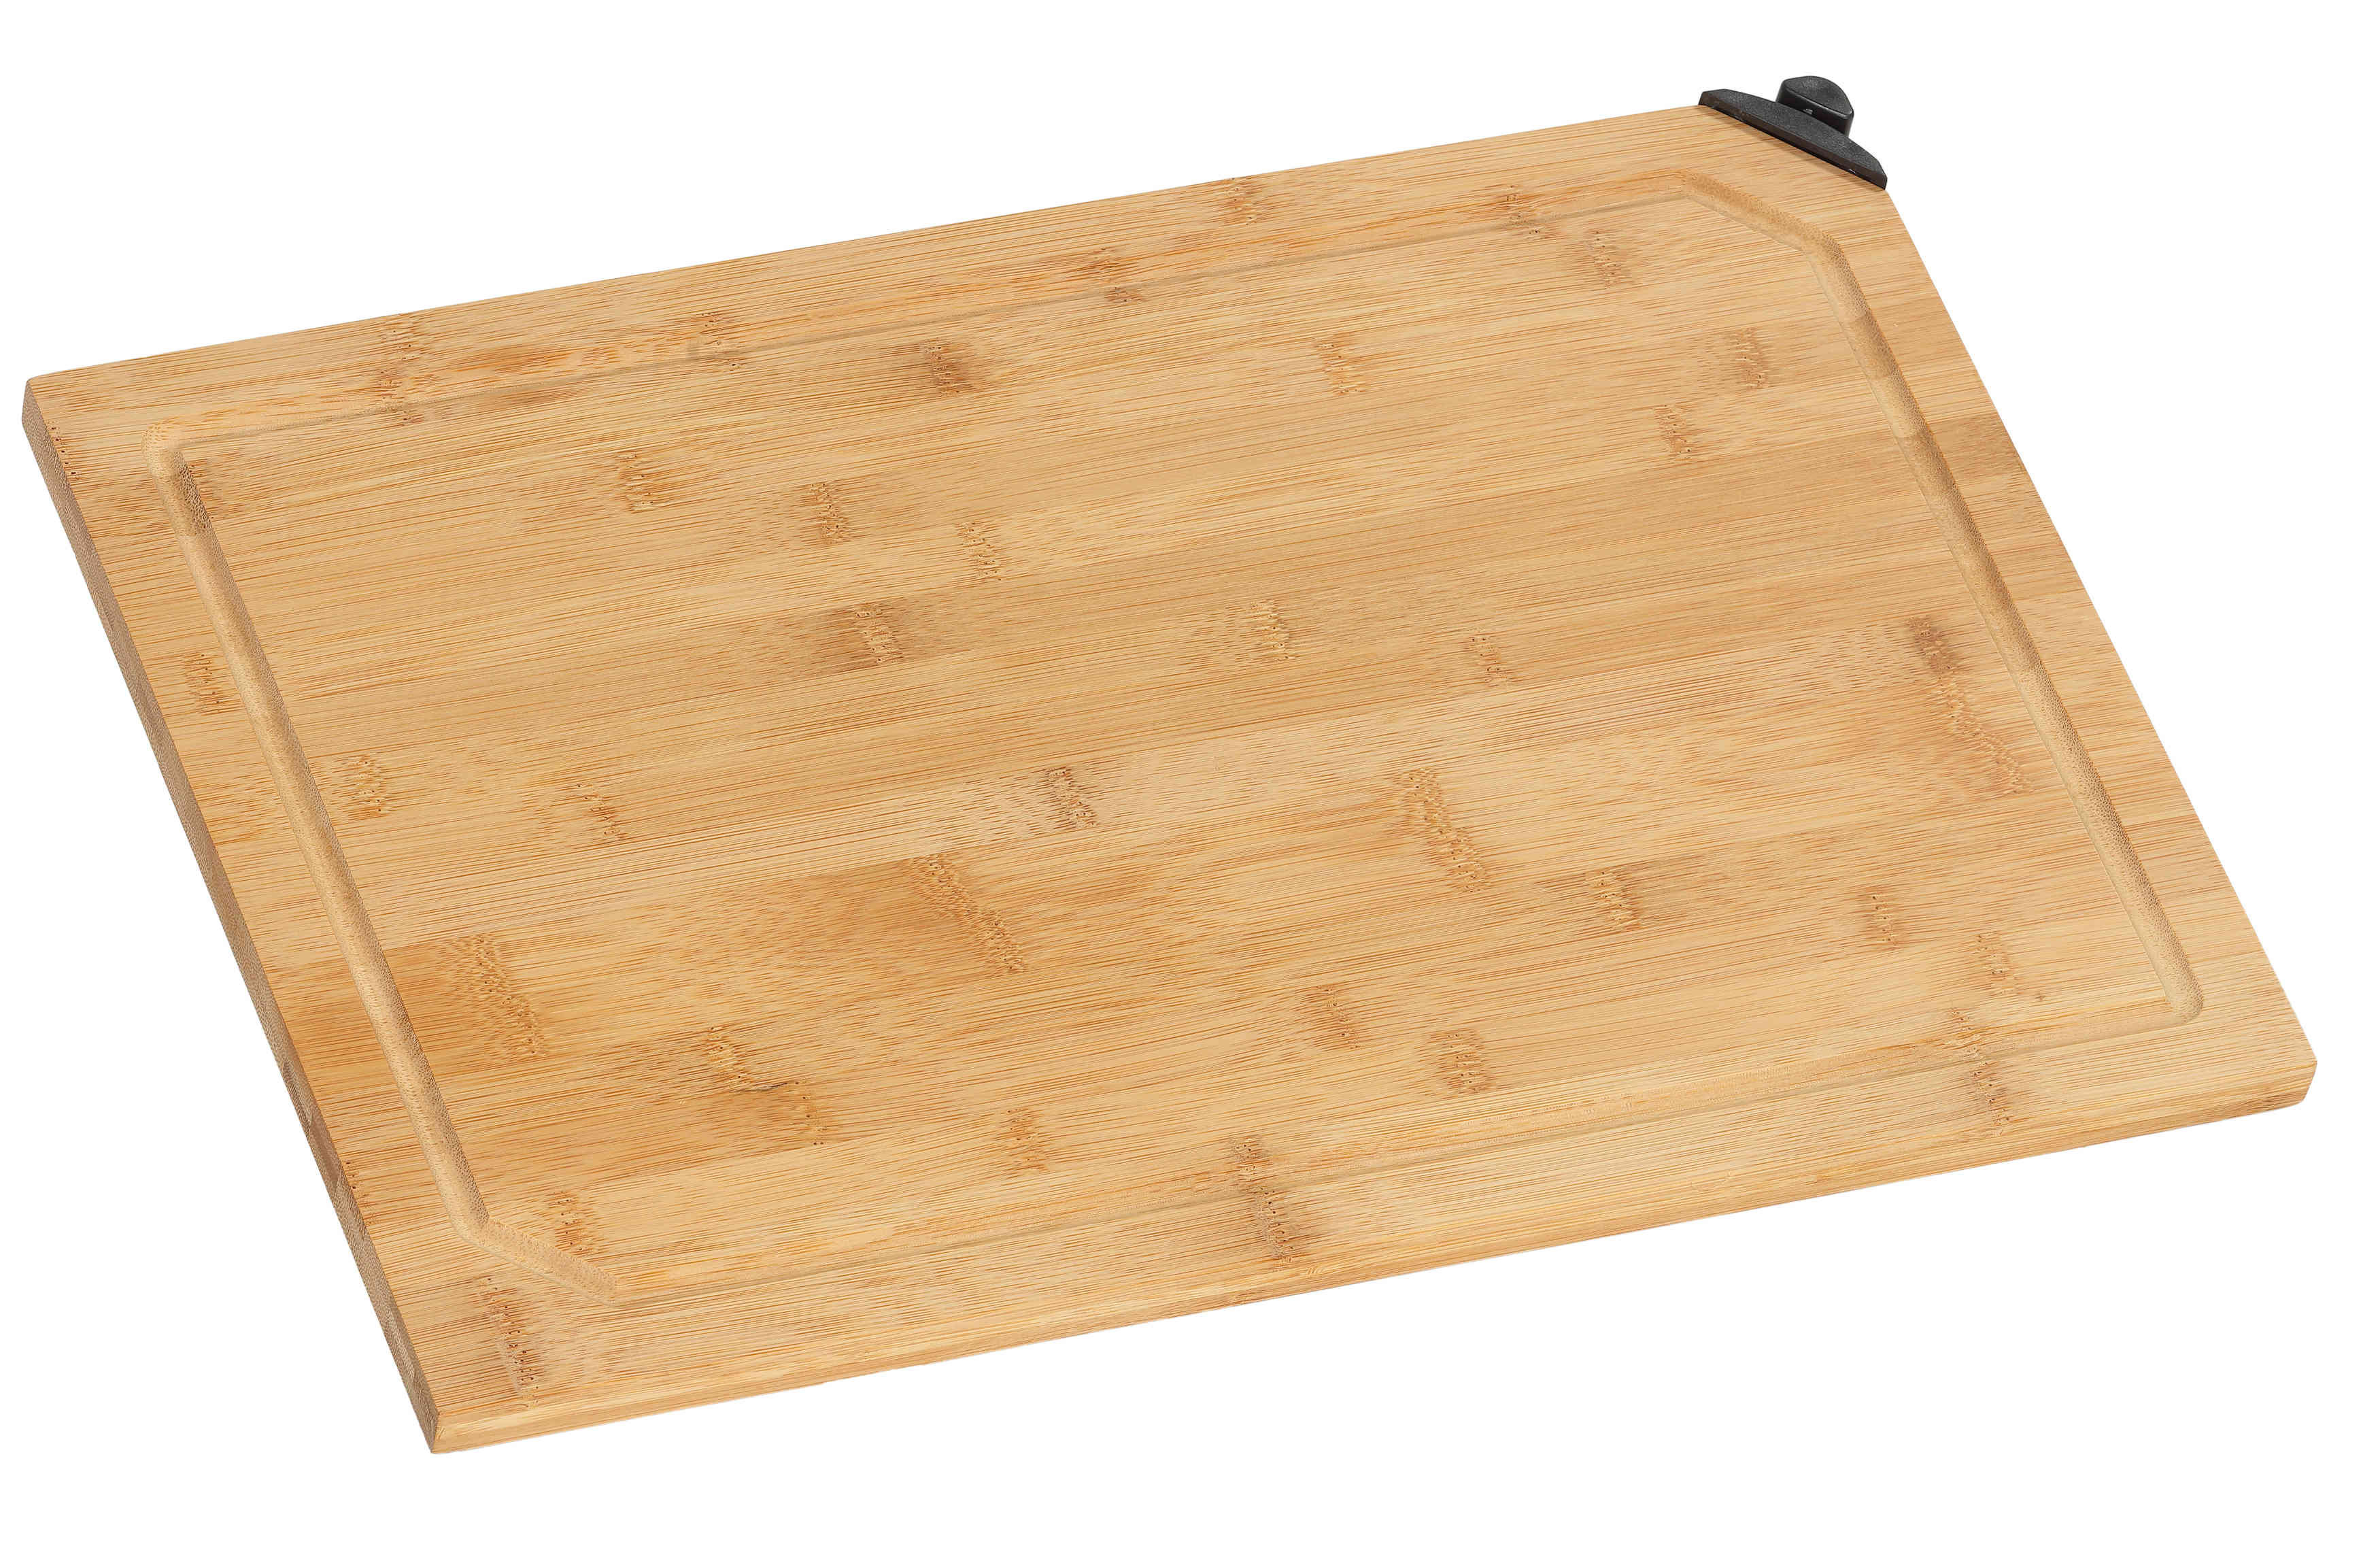 Farberware Bamboo Cutting Board with Non-Slip Corners, (11 x 14)